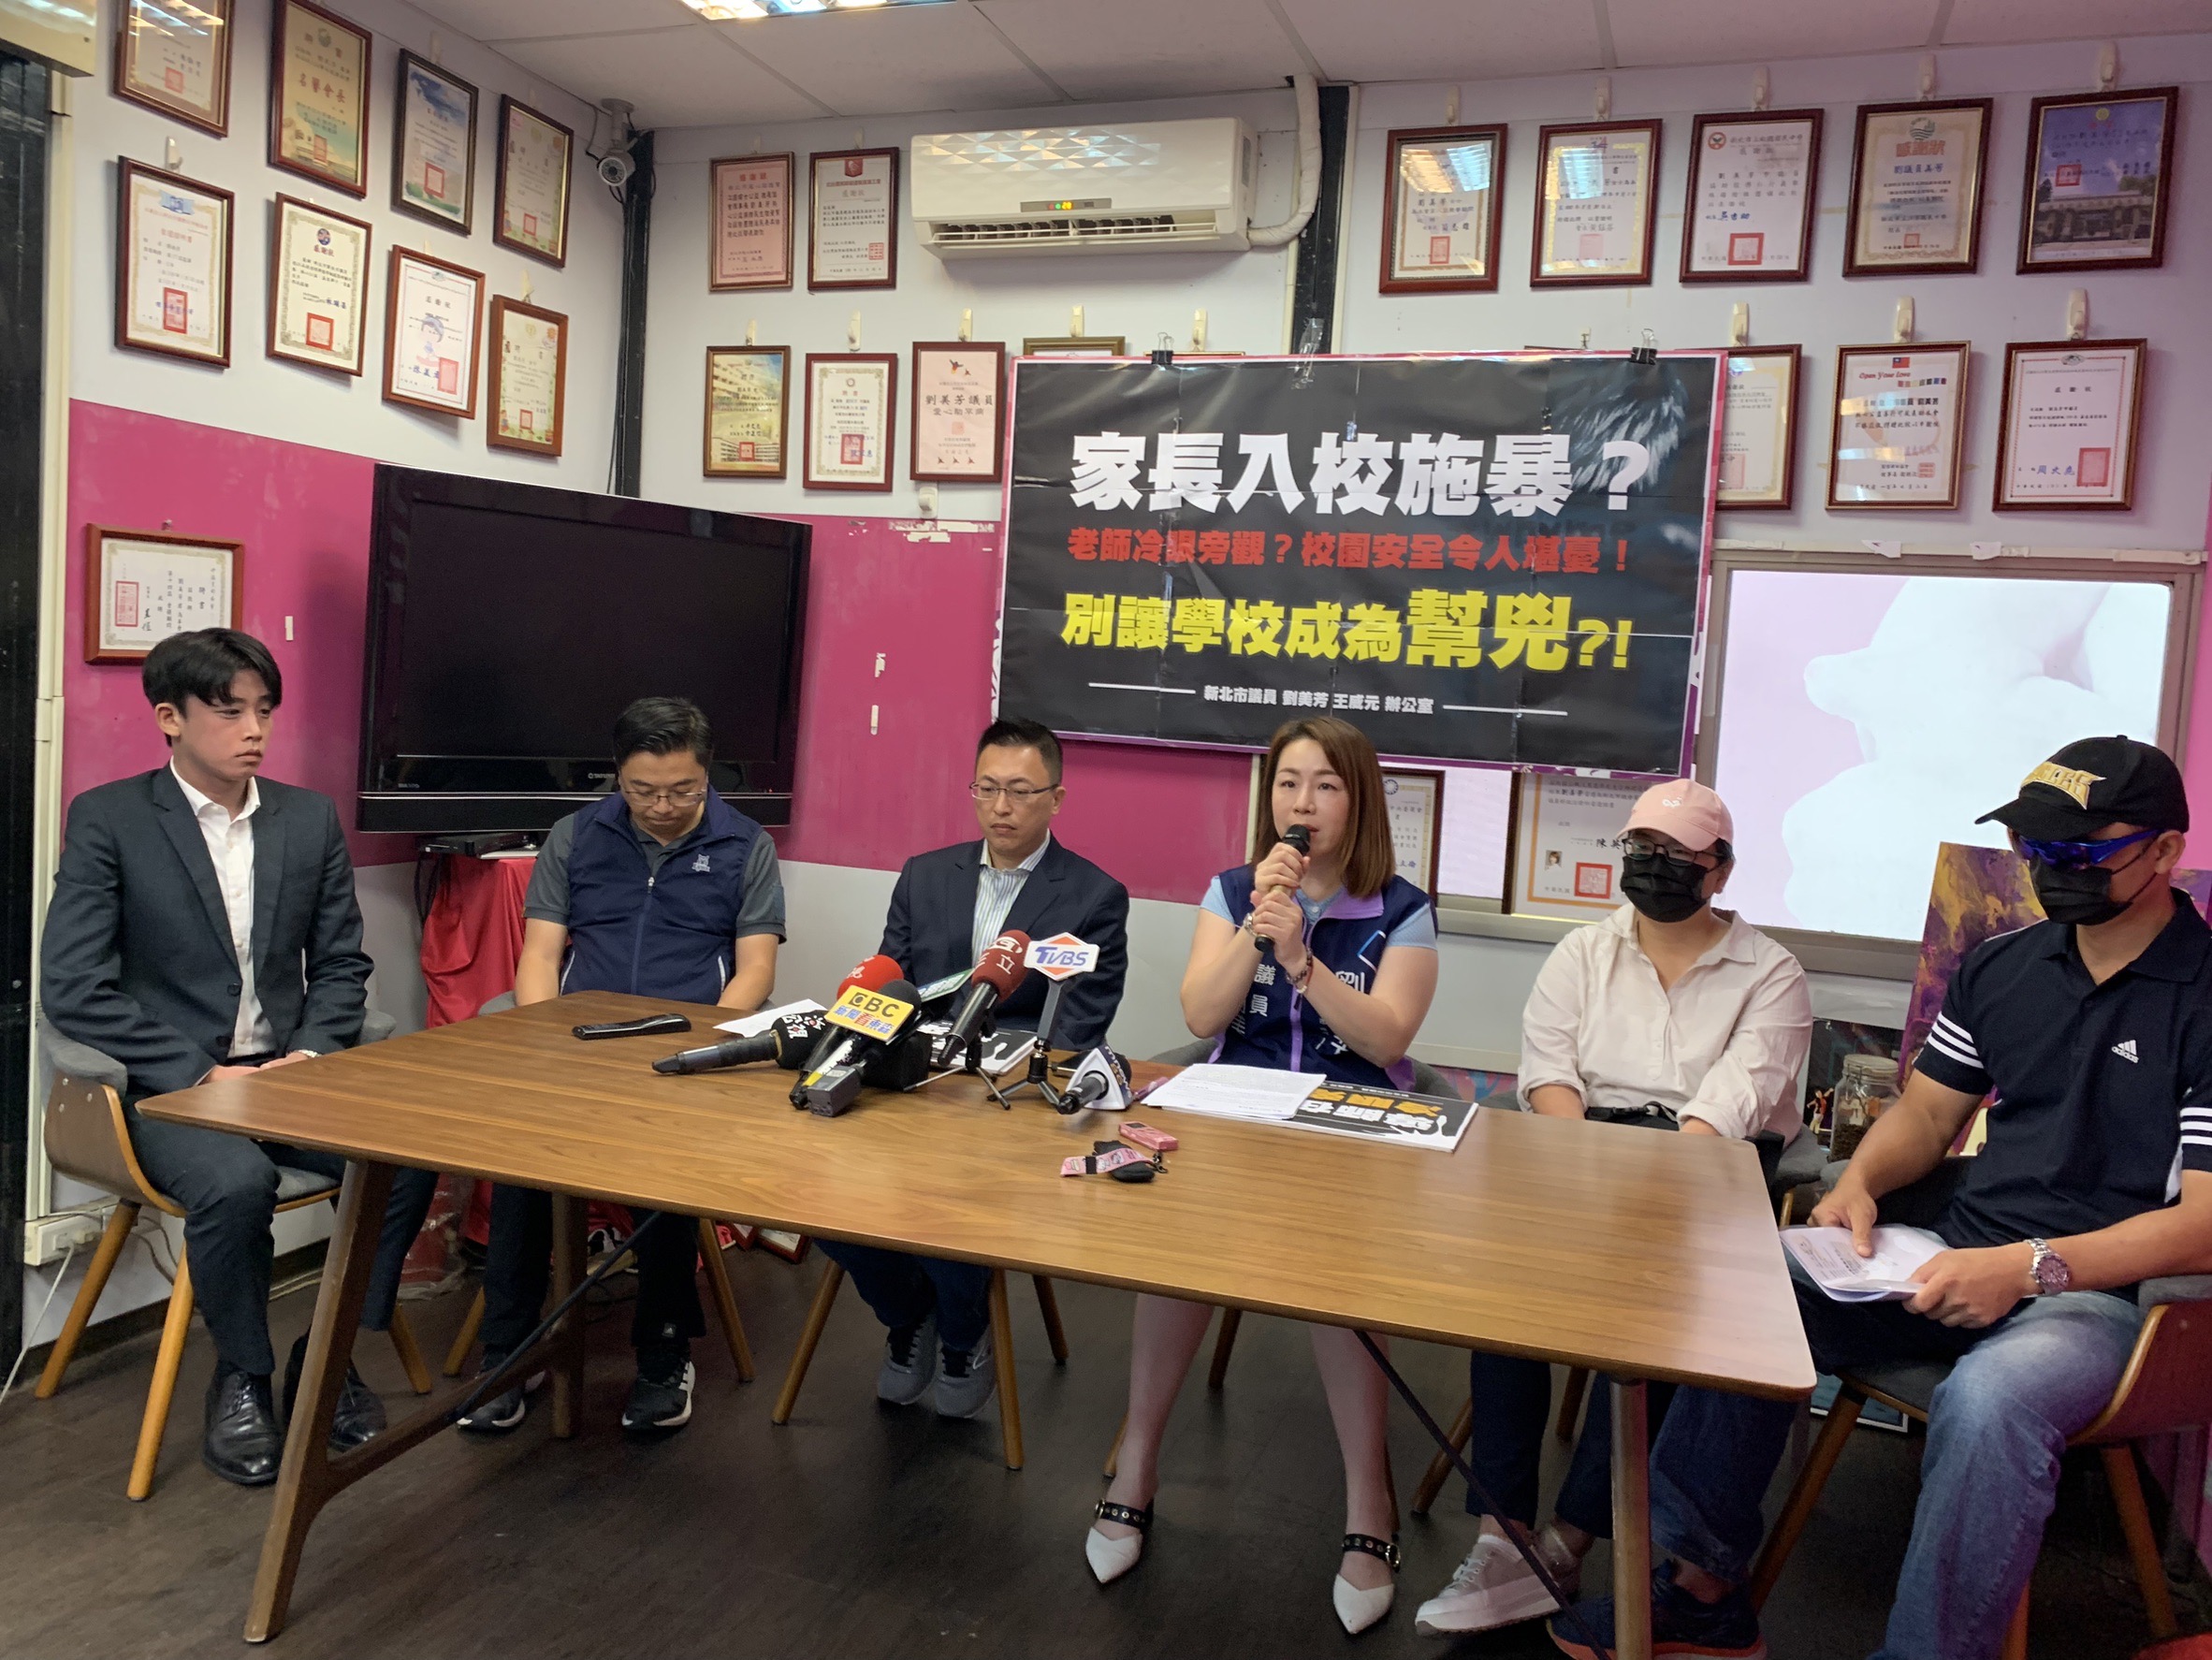 新北市议员刘美芳、王威元今天陪同家长出面控诉校方处理学生问题失当。记者叶德正／摄影